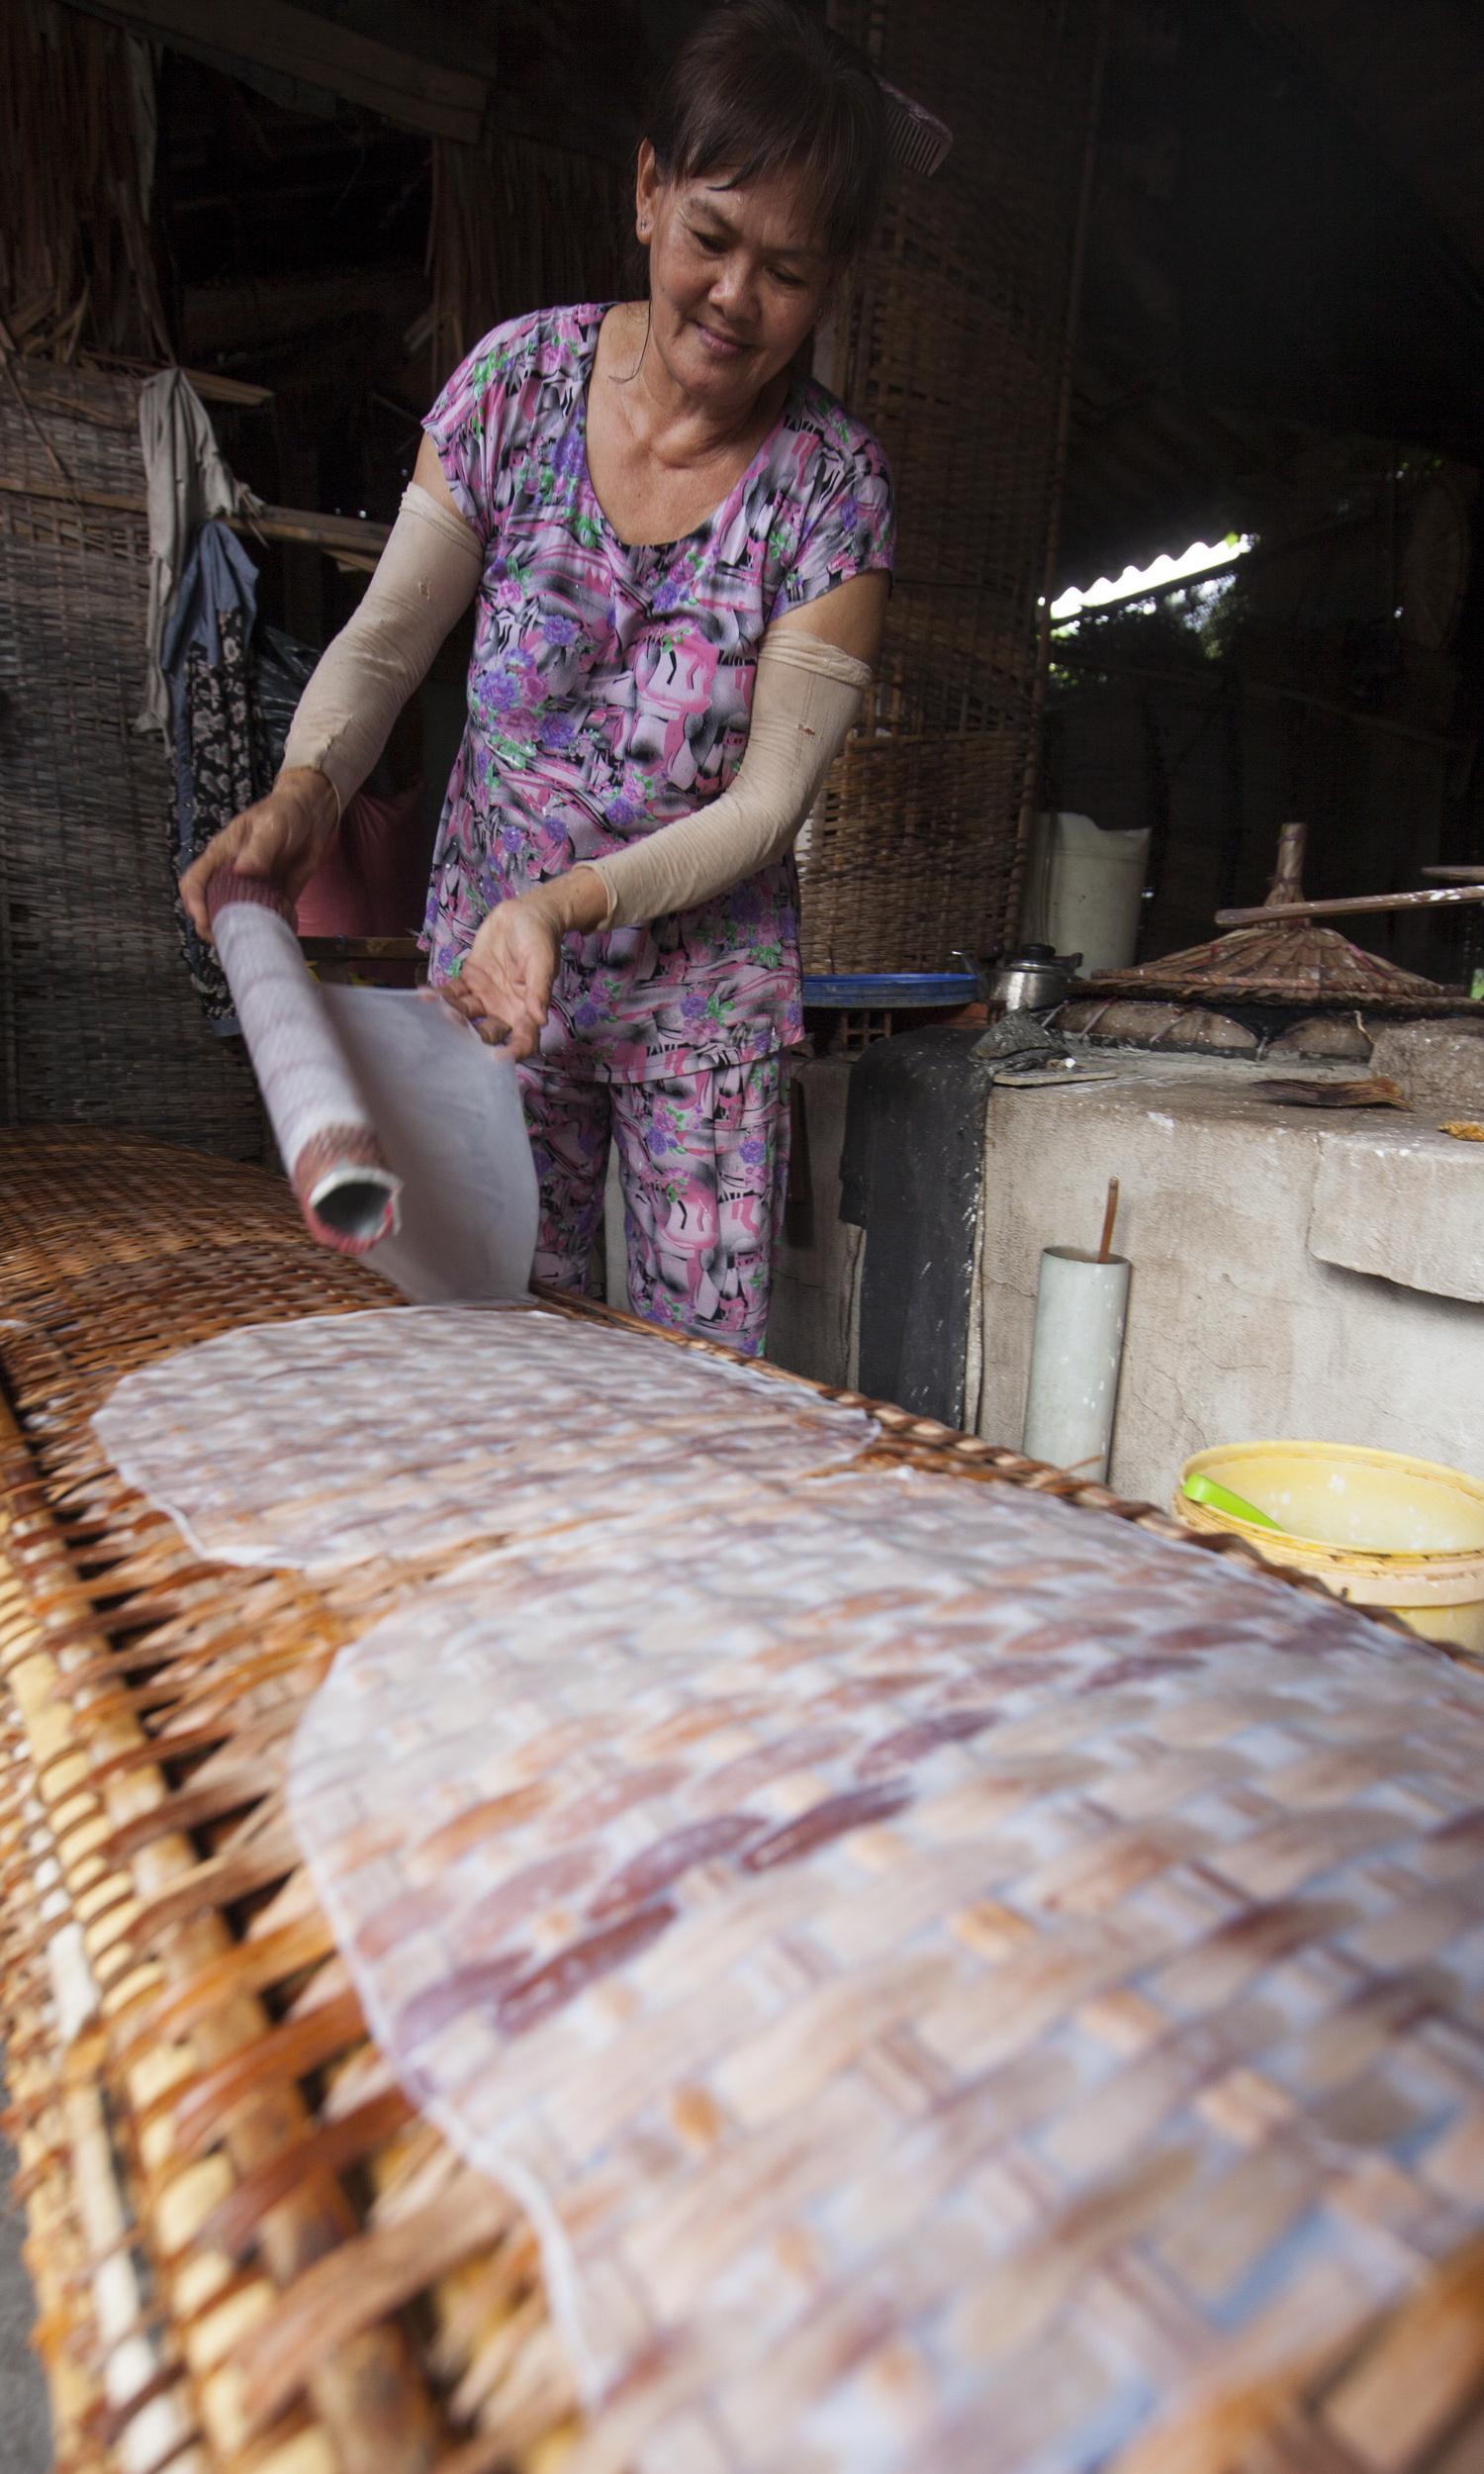 Làng nghề bánh tráng Nhơn Hòa tạo công ăn việc làm cho người dân trong vùng                                                                                   